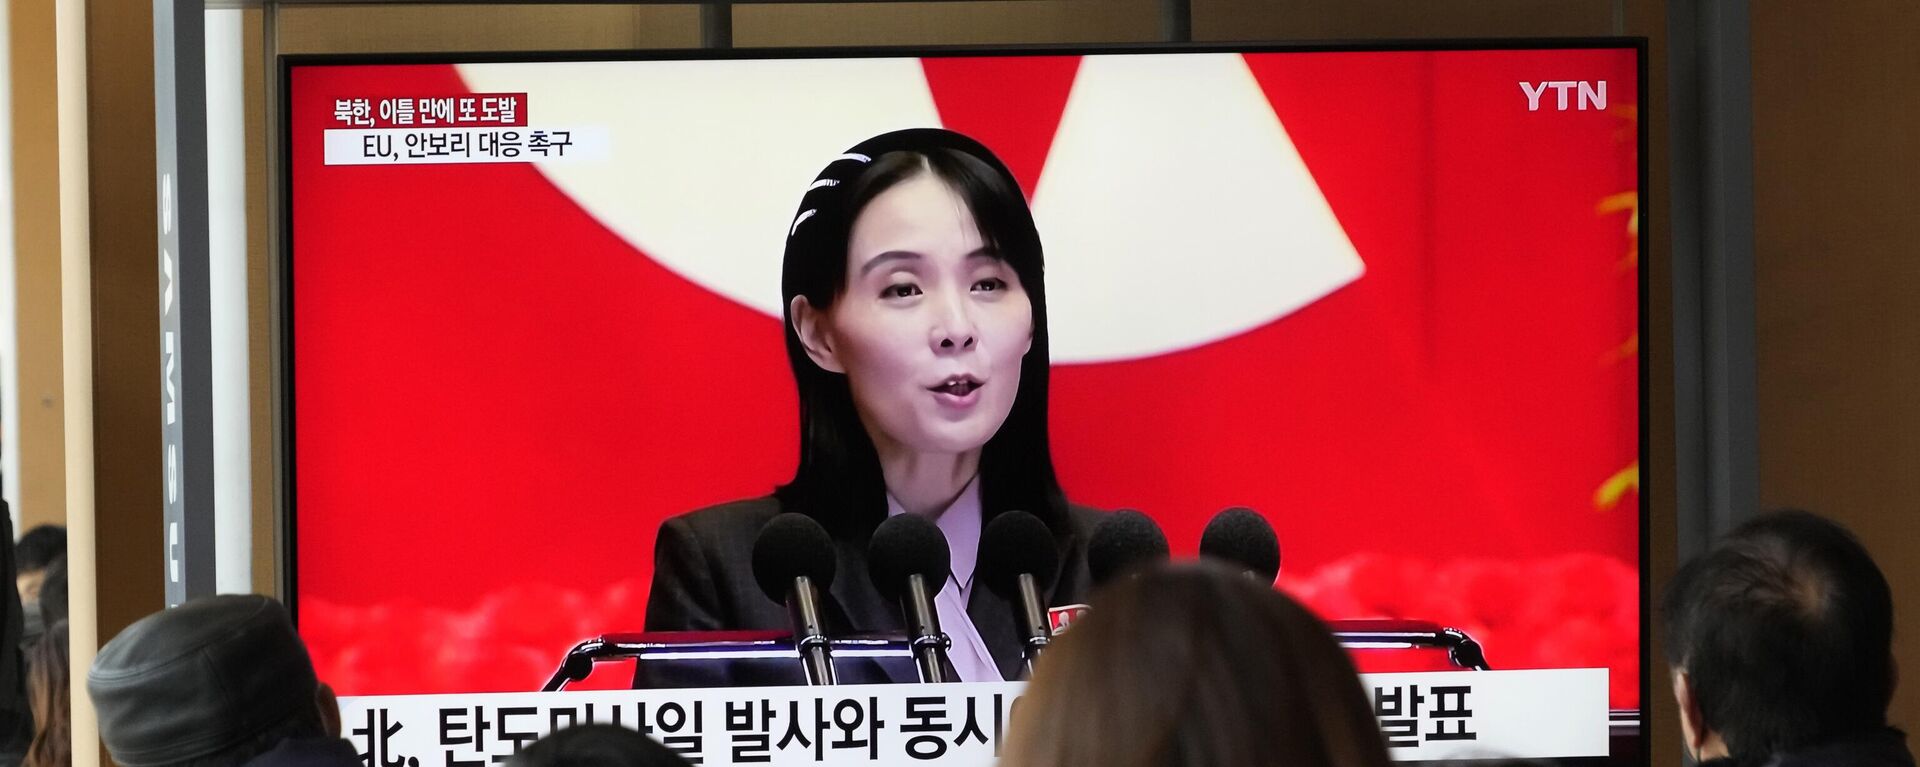 Uma tela de TV mostra uma imagem de arquivo de Kim Yo-jong, irmã do líder norte-coreano Kim Jong Un, durante um programa de notícias na Estação Ferroviária de Seul em Seul, Coreia do Sul, 20 de fevereiro de 2023 - Sputnik Brasil, 1920, 20.05.2023